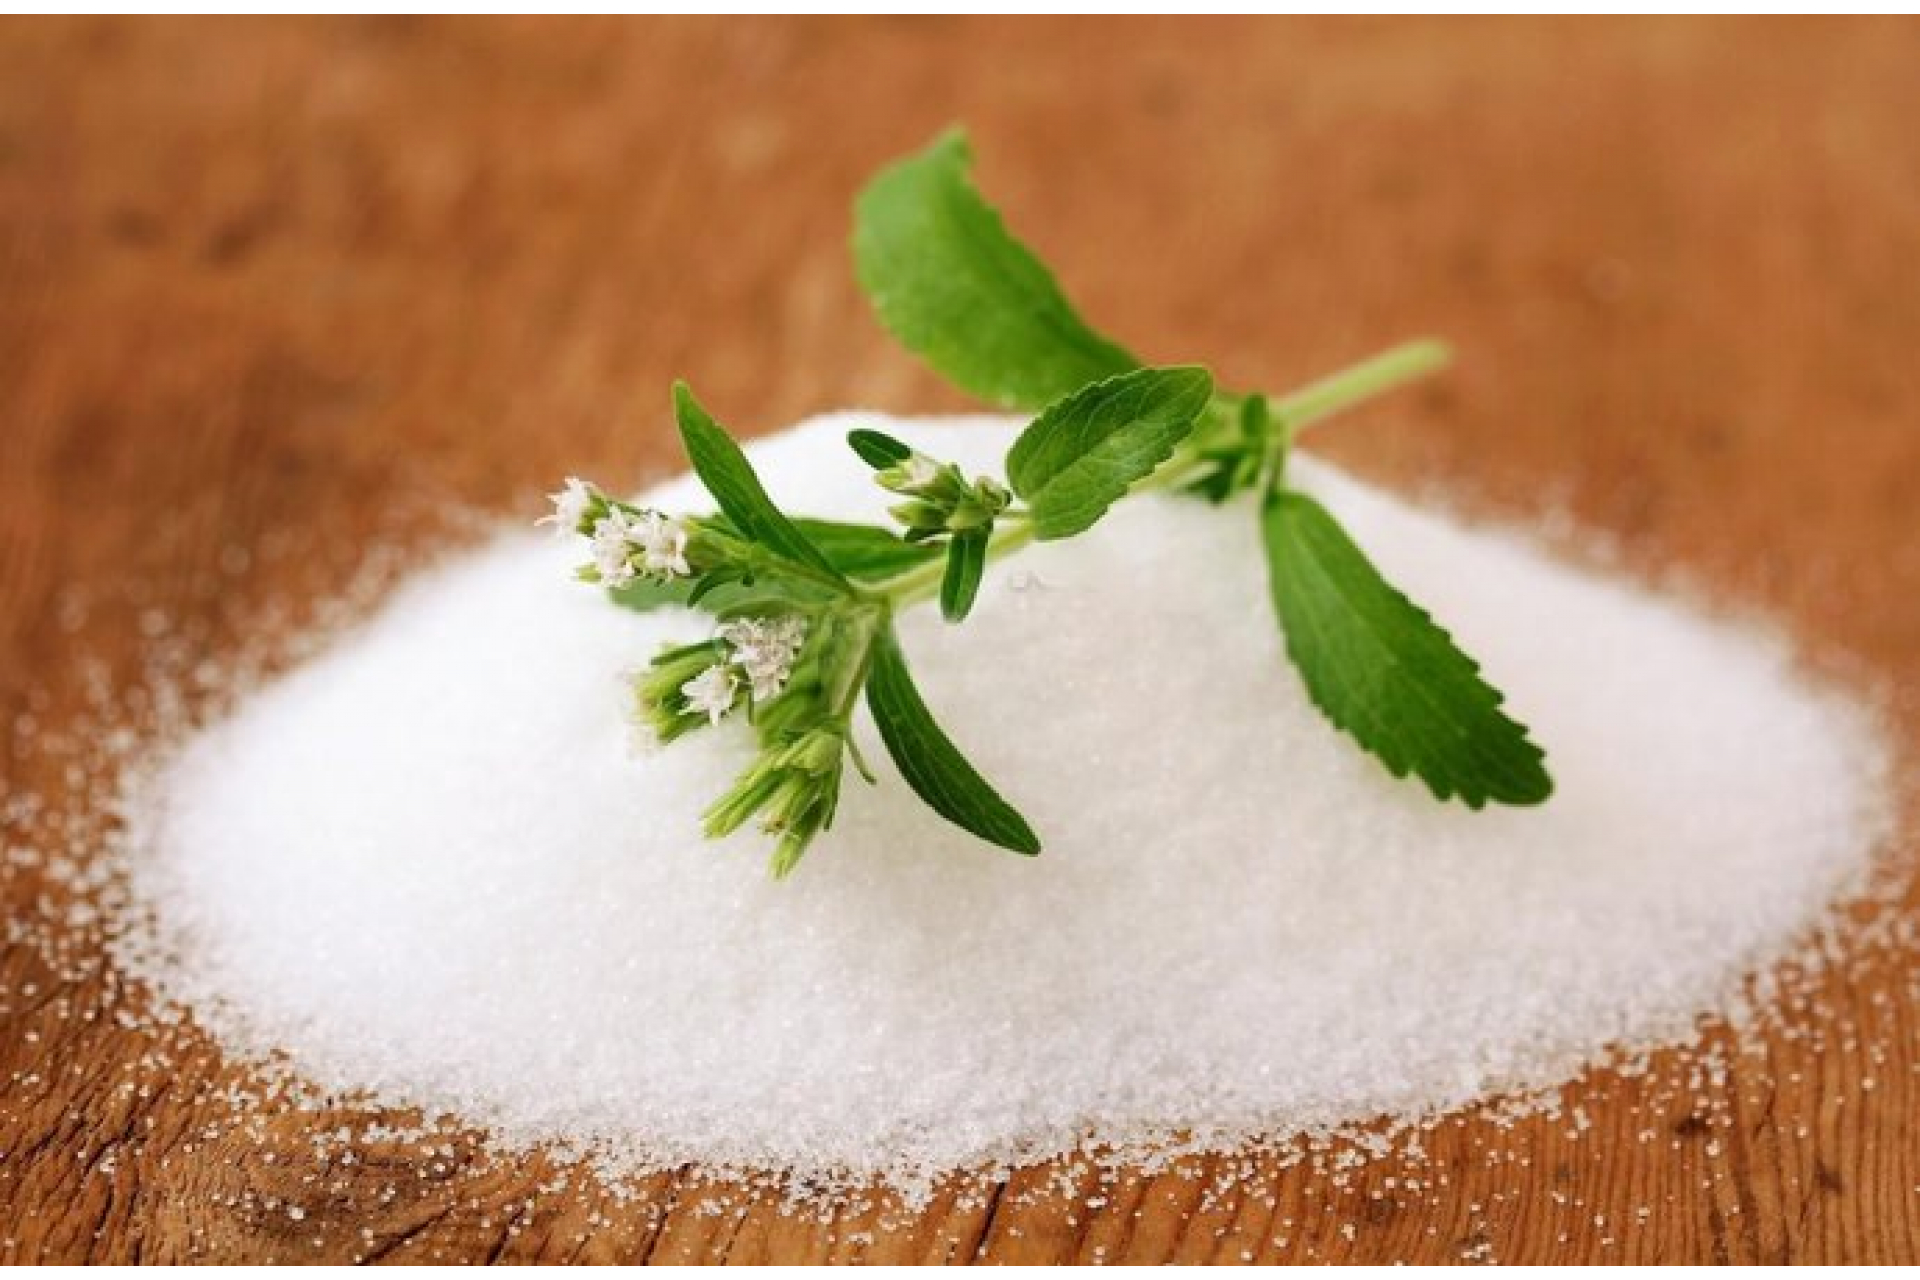 Stevia, avagy jázminpakóca: édesebb és egészségesebb a cukornál, mégsem ismerjük